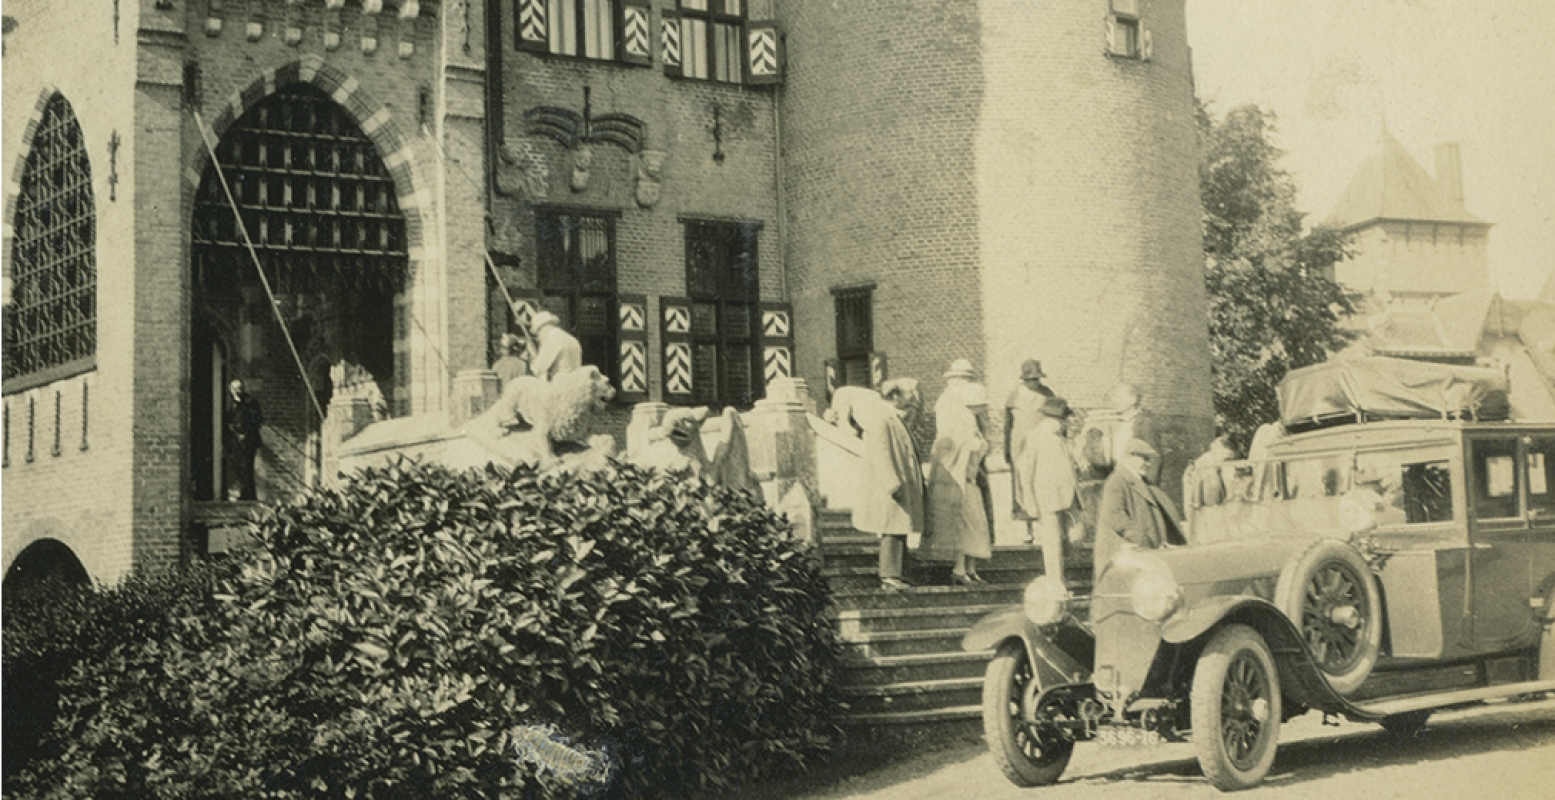 De baron en barones maken zich klaar voor vertrek. Beeld uit 1920. Foto: Kasteel De Haar.